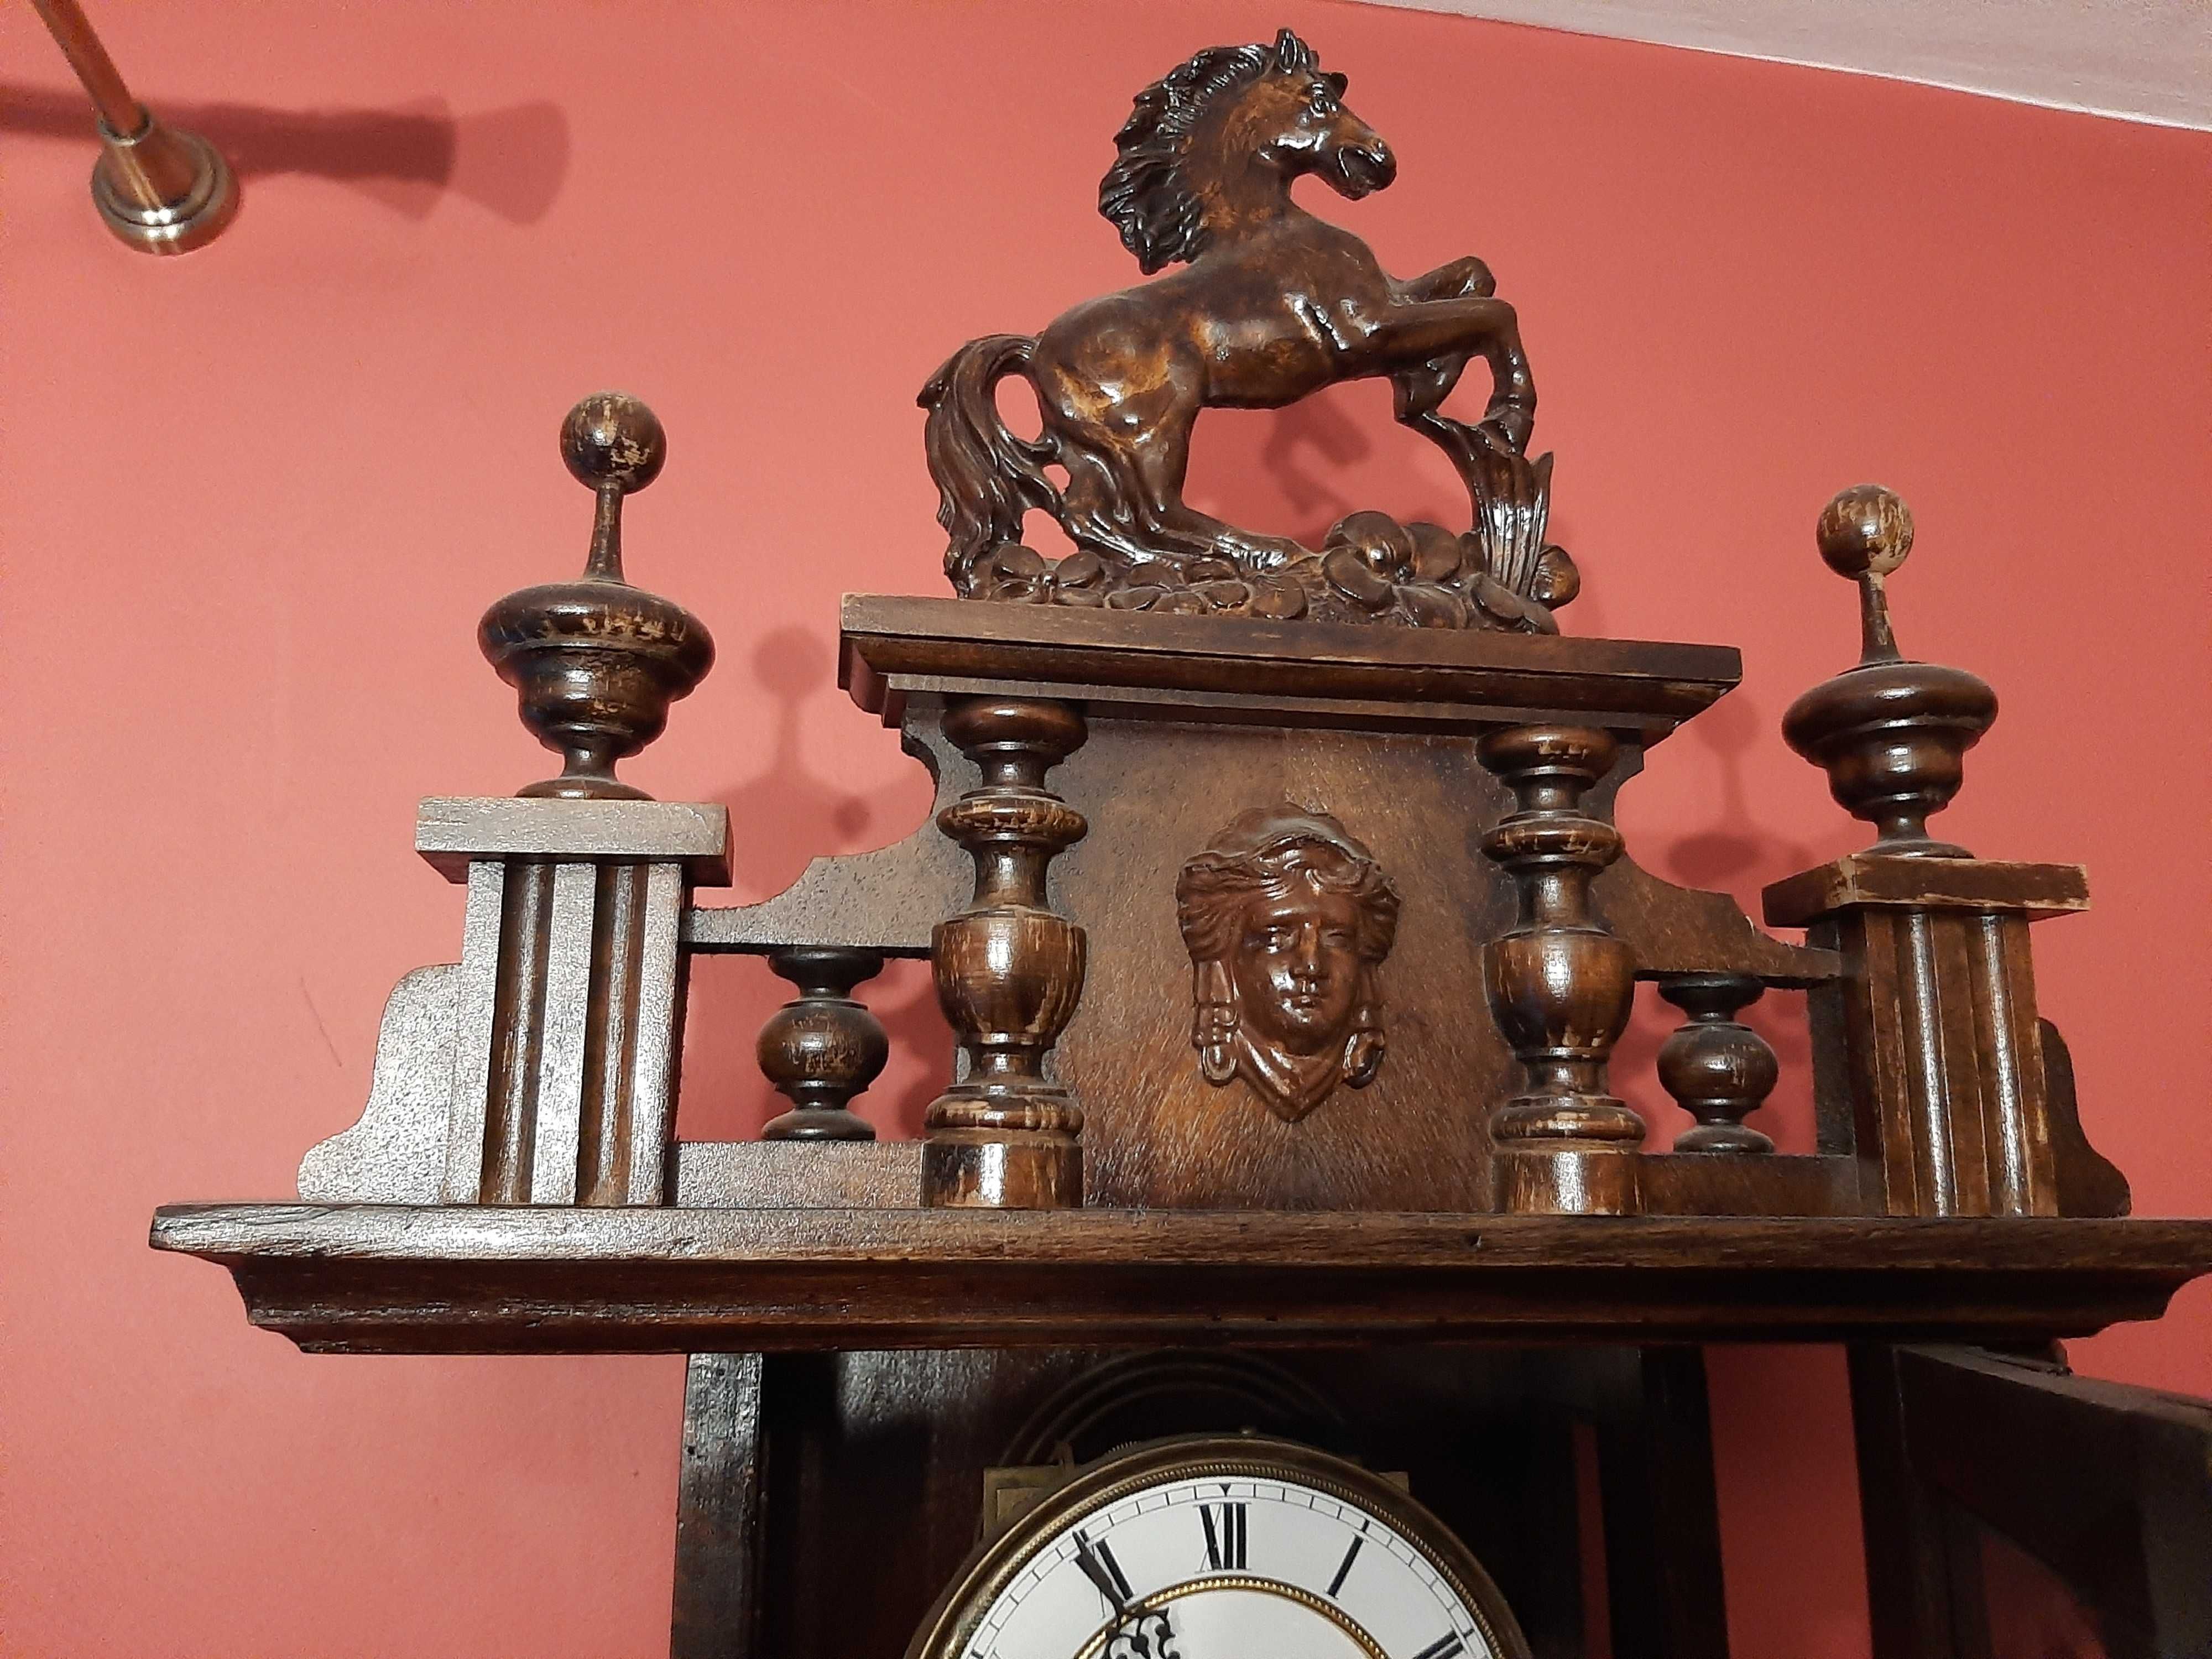 Stary zegar wiszący Gustav Becker Silesia